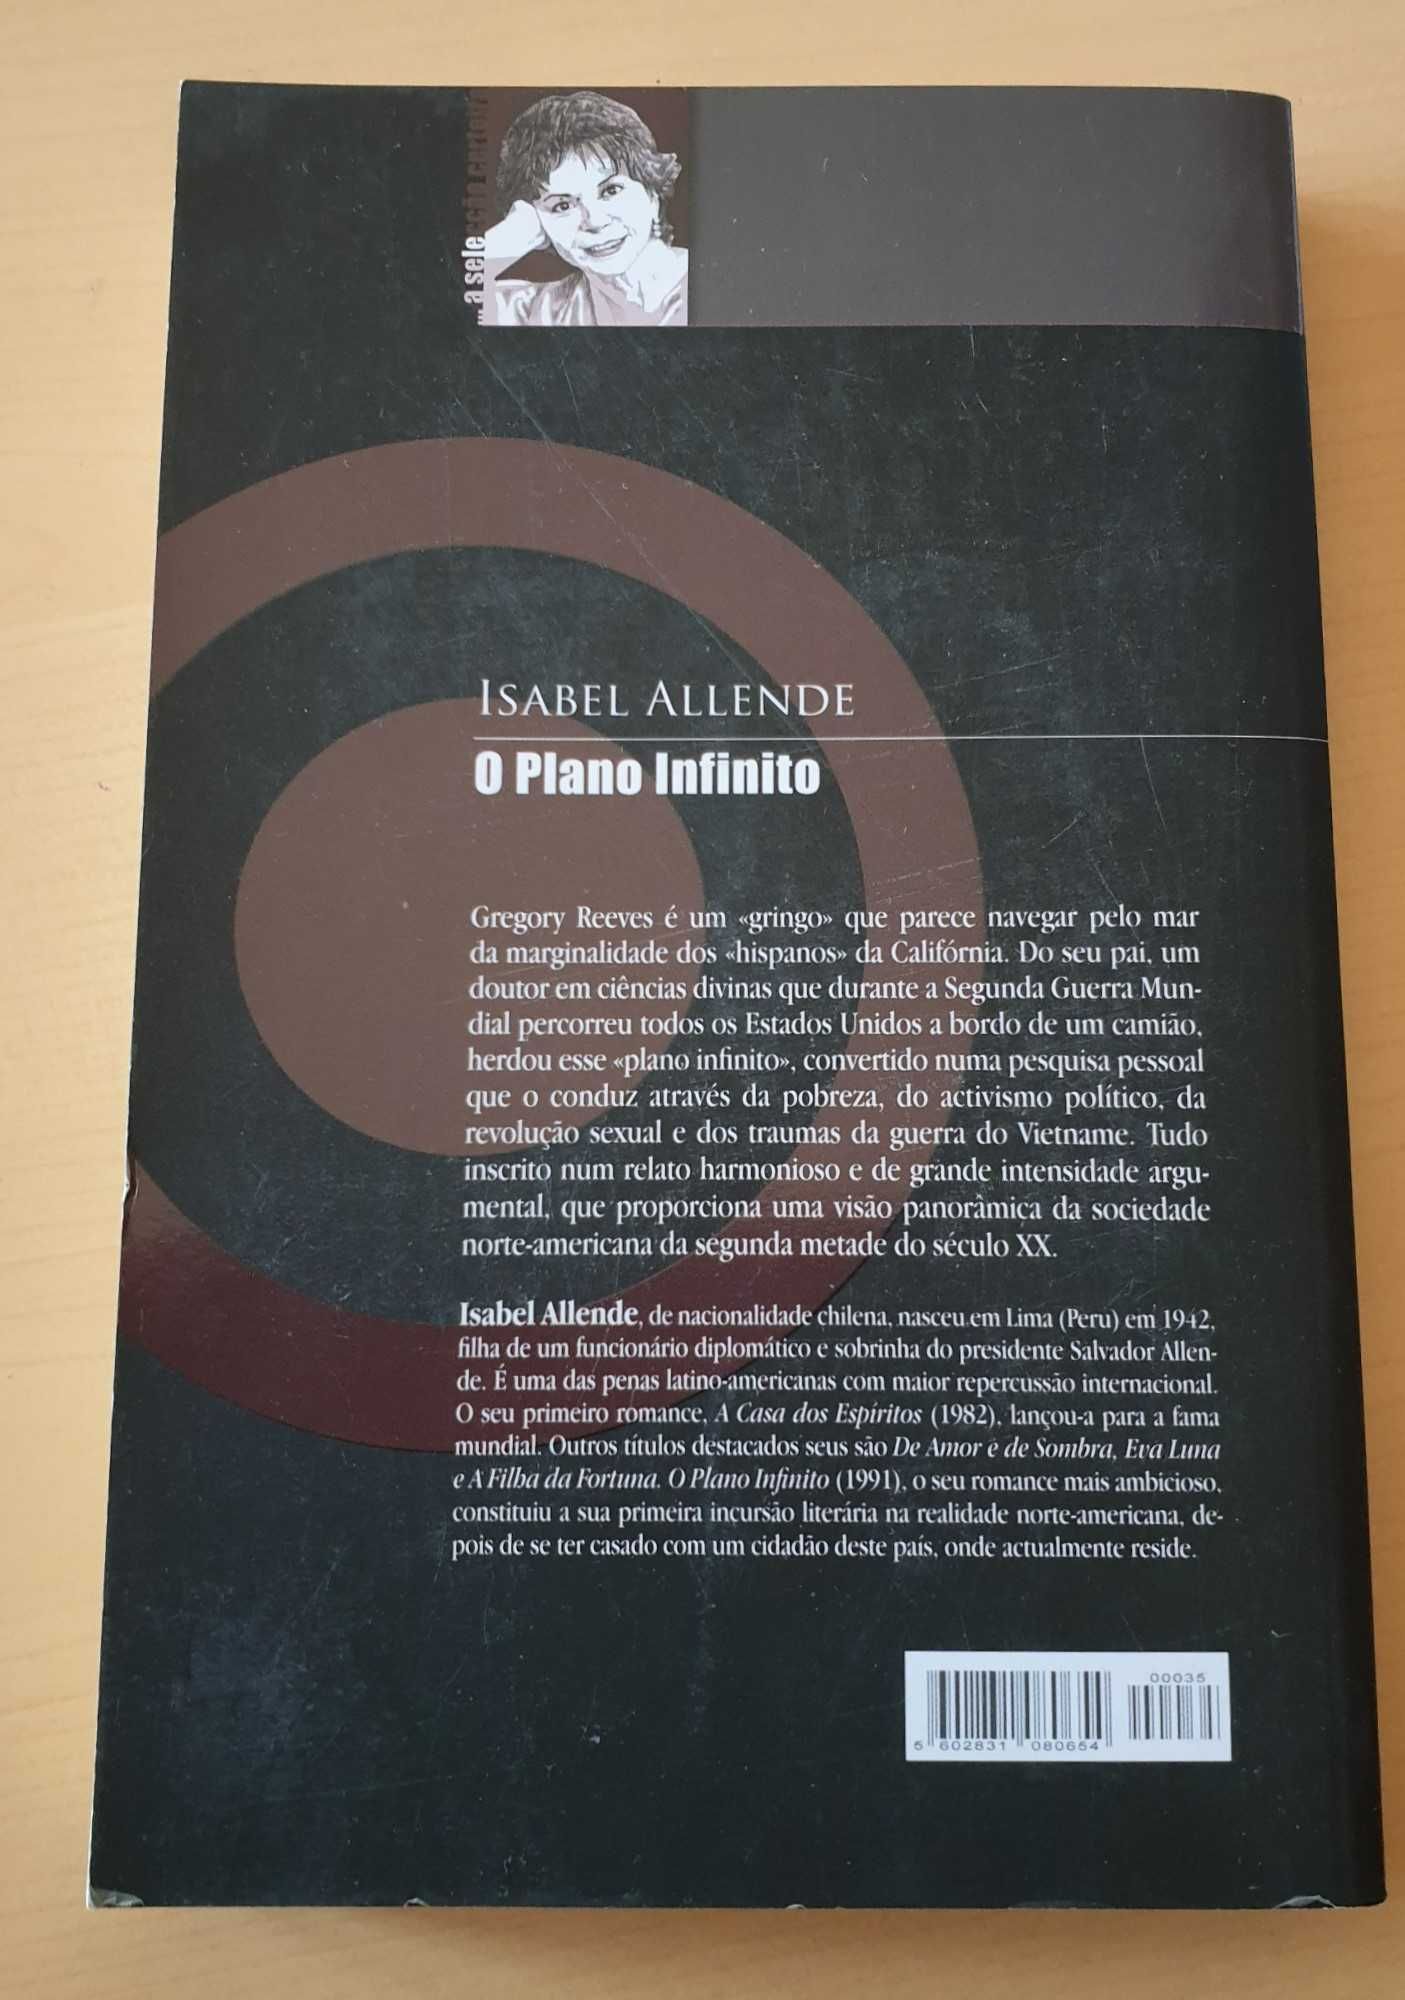 Livro O Plano Infinito - Isabel Allende Portes Grátis